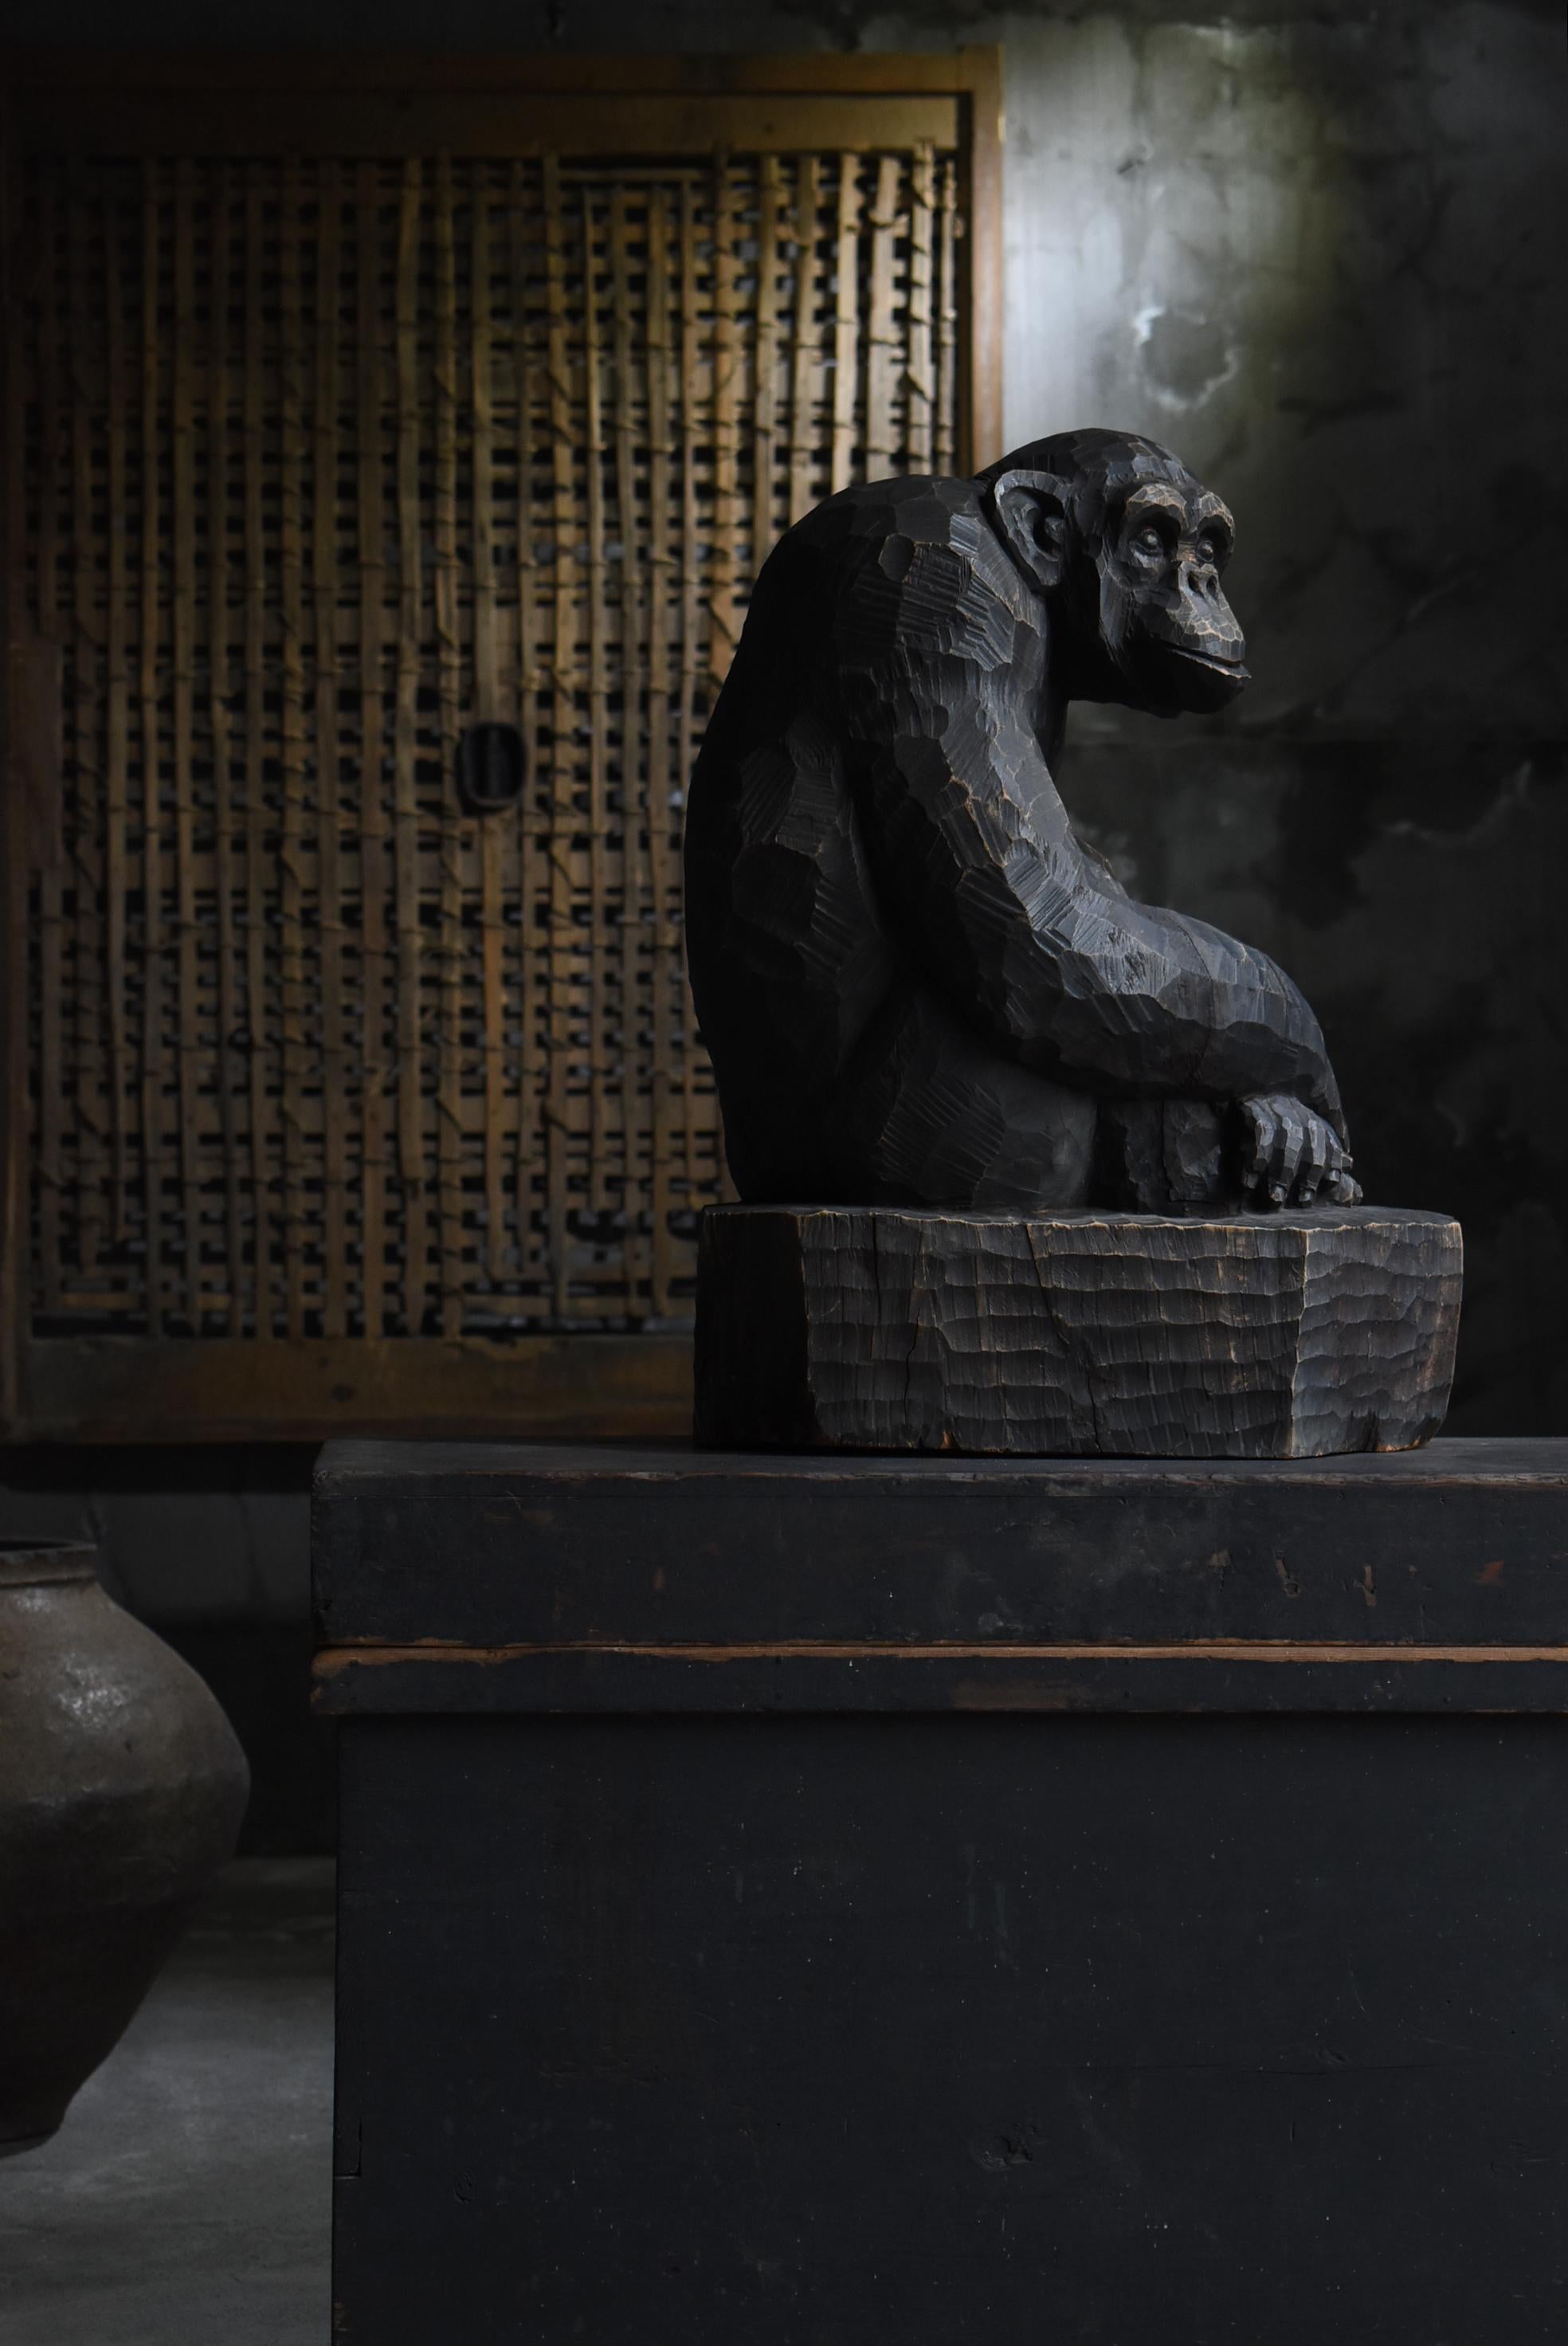 Dies ist eine alte japanische Holzschnitzerei eines Schimpansen.
Es stammt aus der mittleren Showa-Periode (1940er-1960er Jahre).
Es ist aus Kampferholz gefertigt.

Es handelt sich um ein dynamisches Werk, das kühn aus einem großen Baum geschnitzt